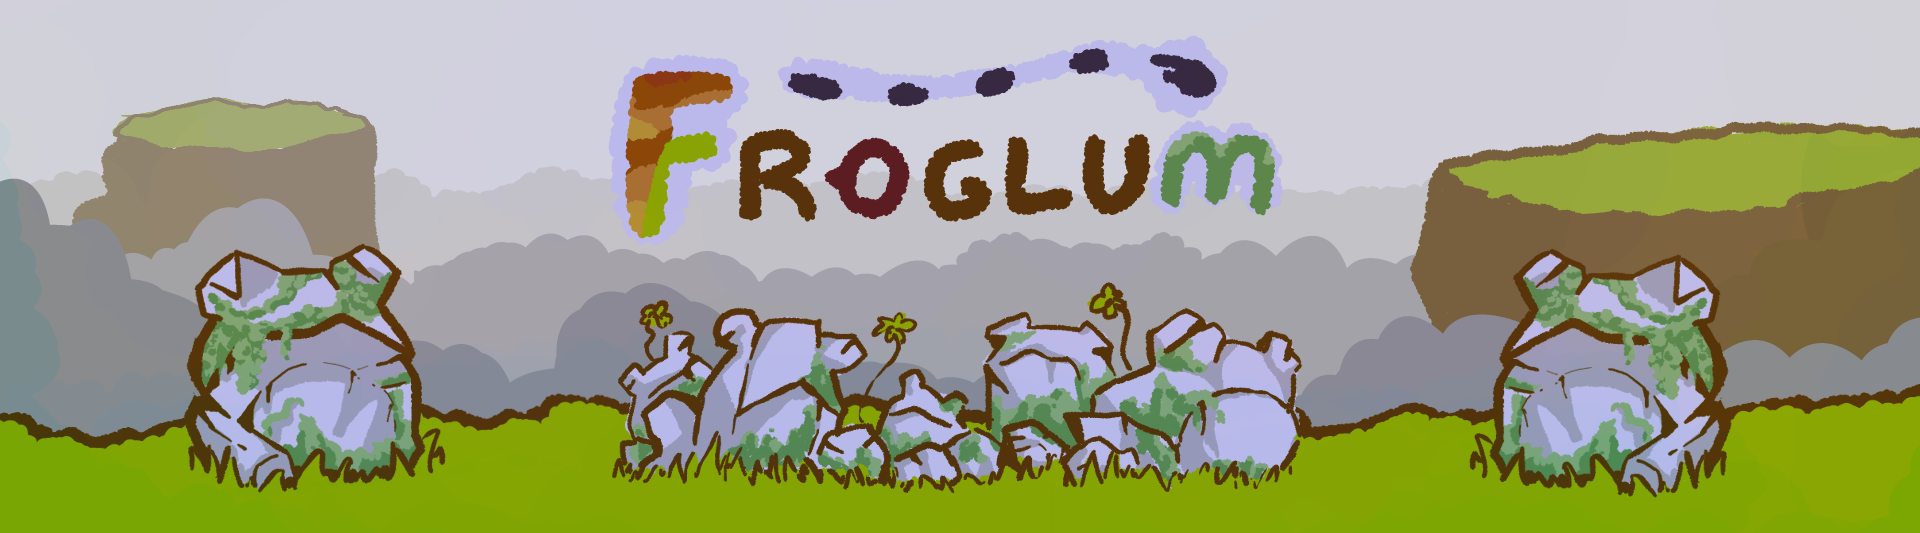 Froglum